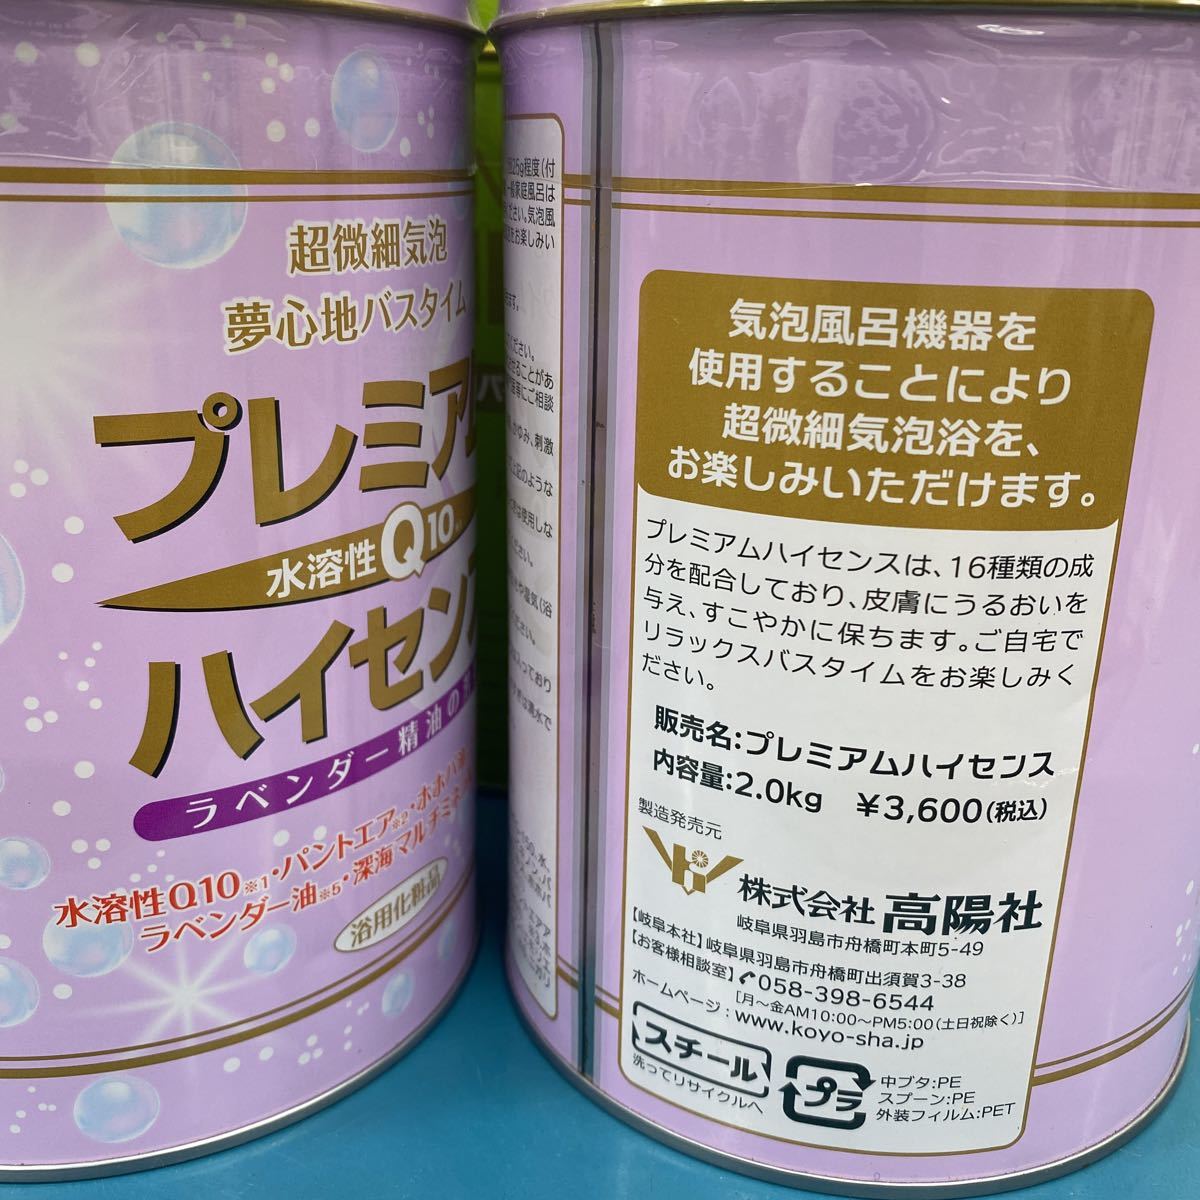 高陽社 パインハイセンス プレミアムハイセンス 入浴剤 薬用入浴剤 4缶